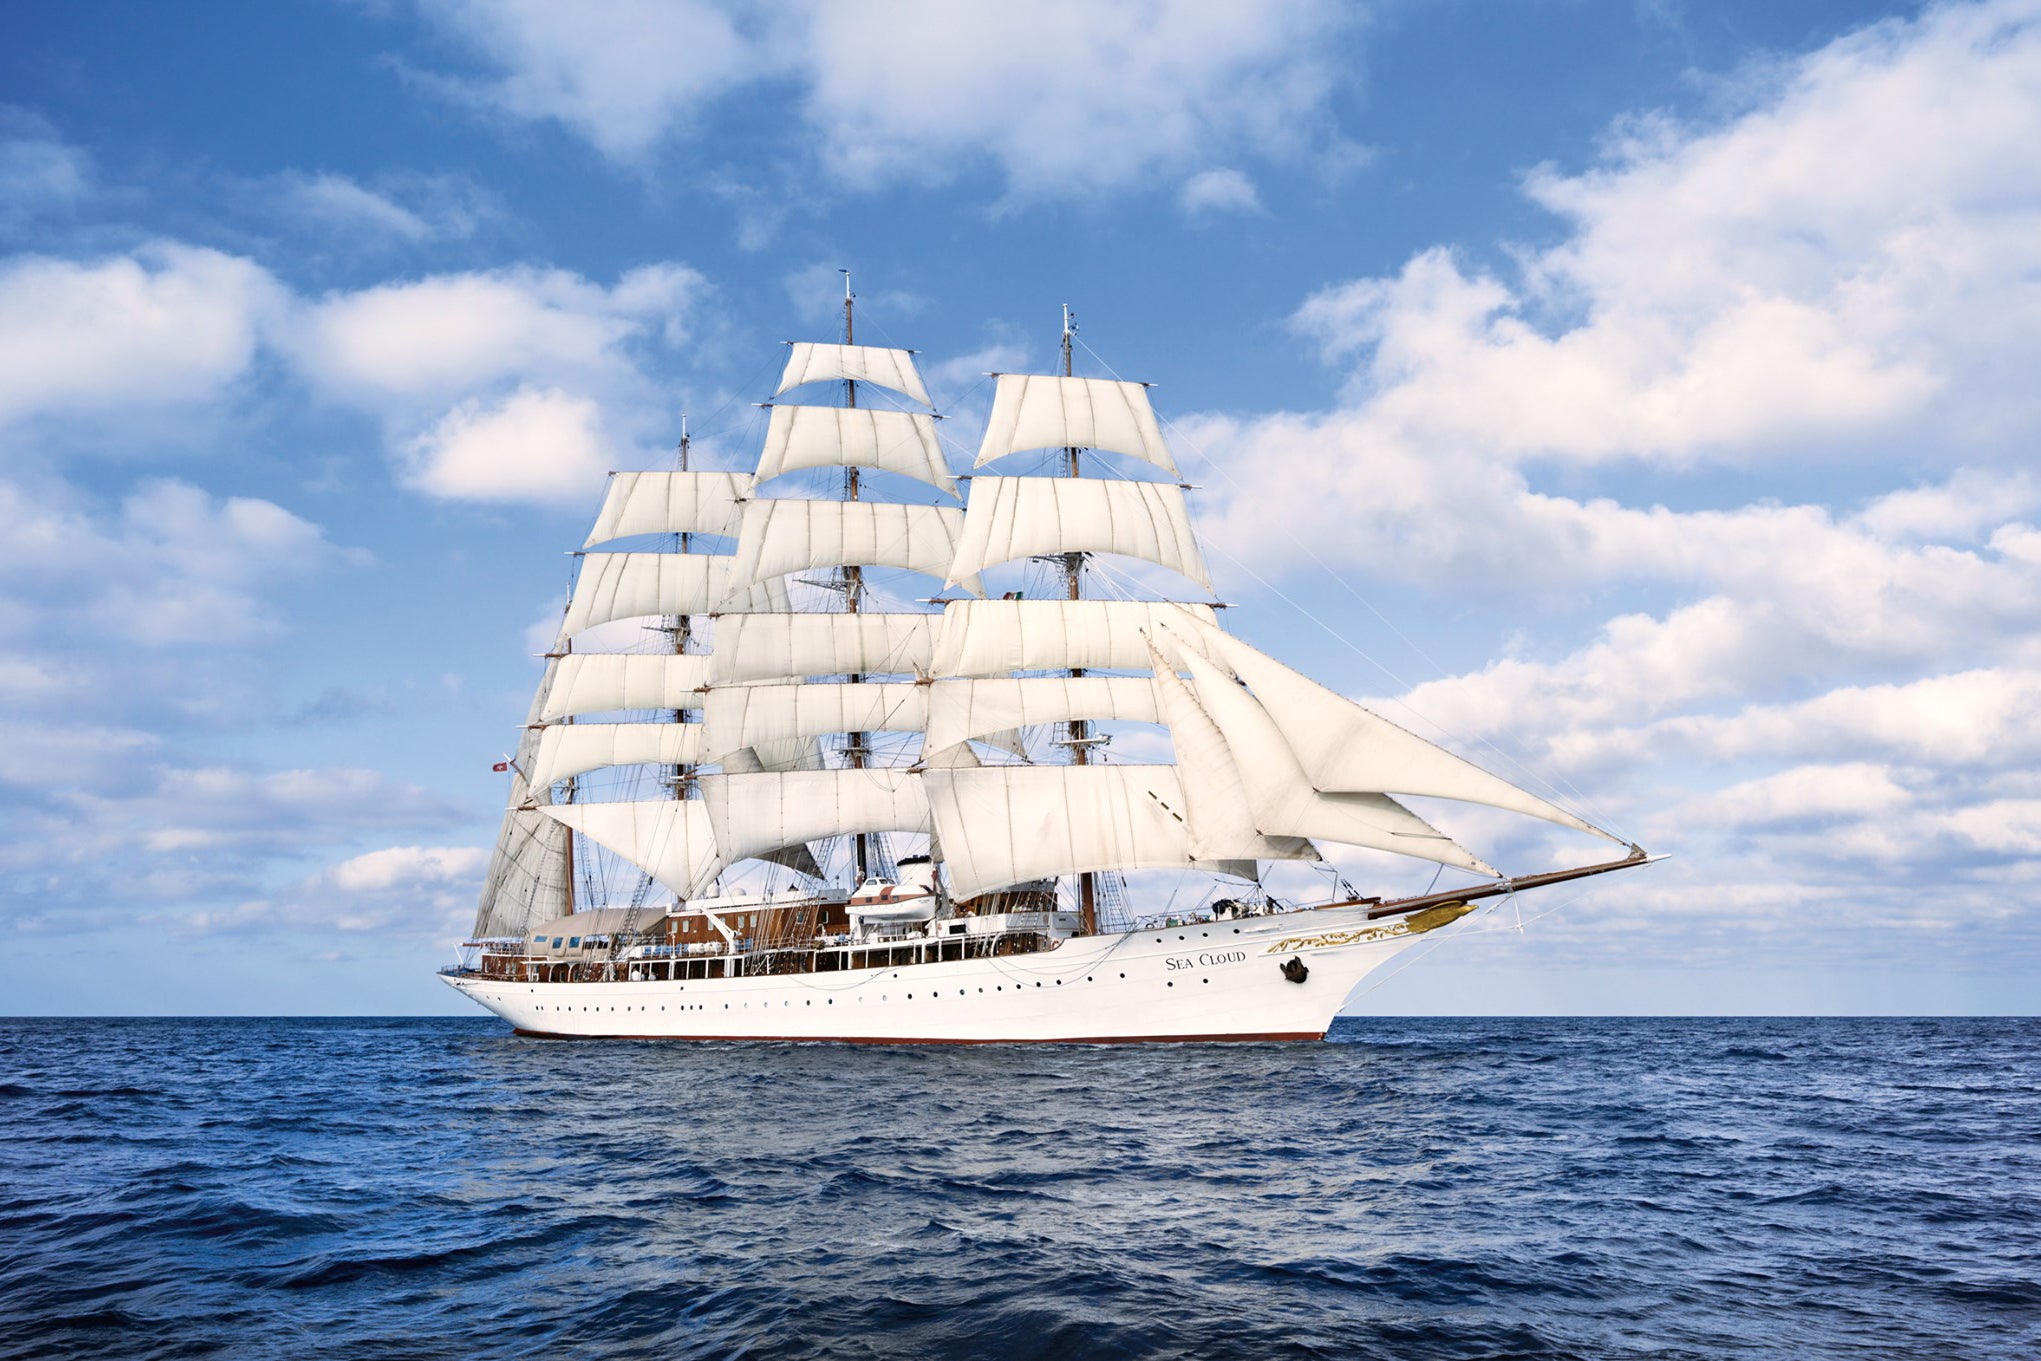 The sailing ship Sea Cloud 